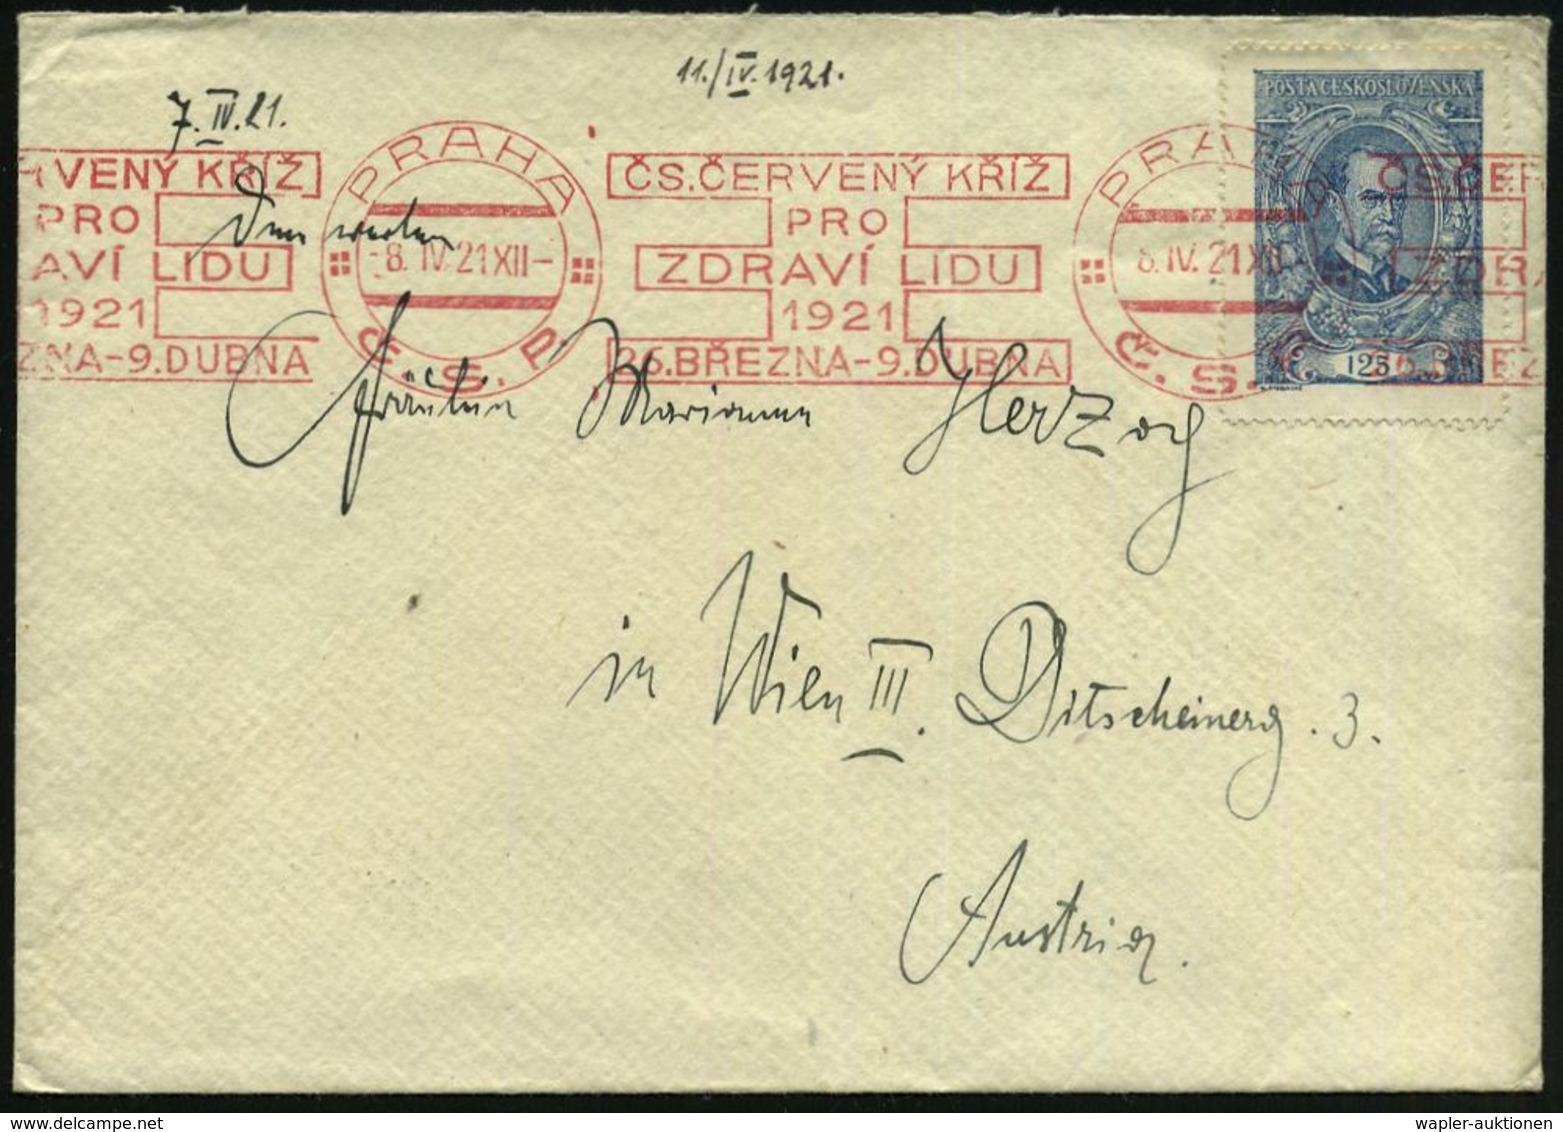 ROTKREUZ-KONFERENZEN & KONGRESSE : TSCHECHOSLOWAKEI 1921 (8.4.) Seltener, Roter BdMWSt: PRAHA/C.S.R./CS. CERVENY KRIZ/PR - Rotes Kreuz